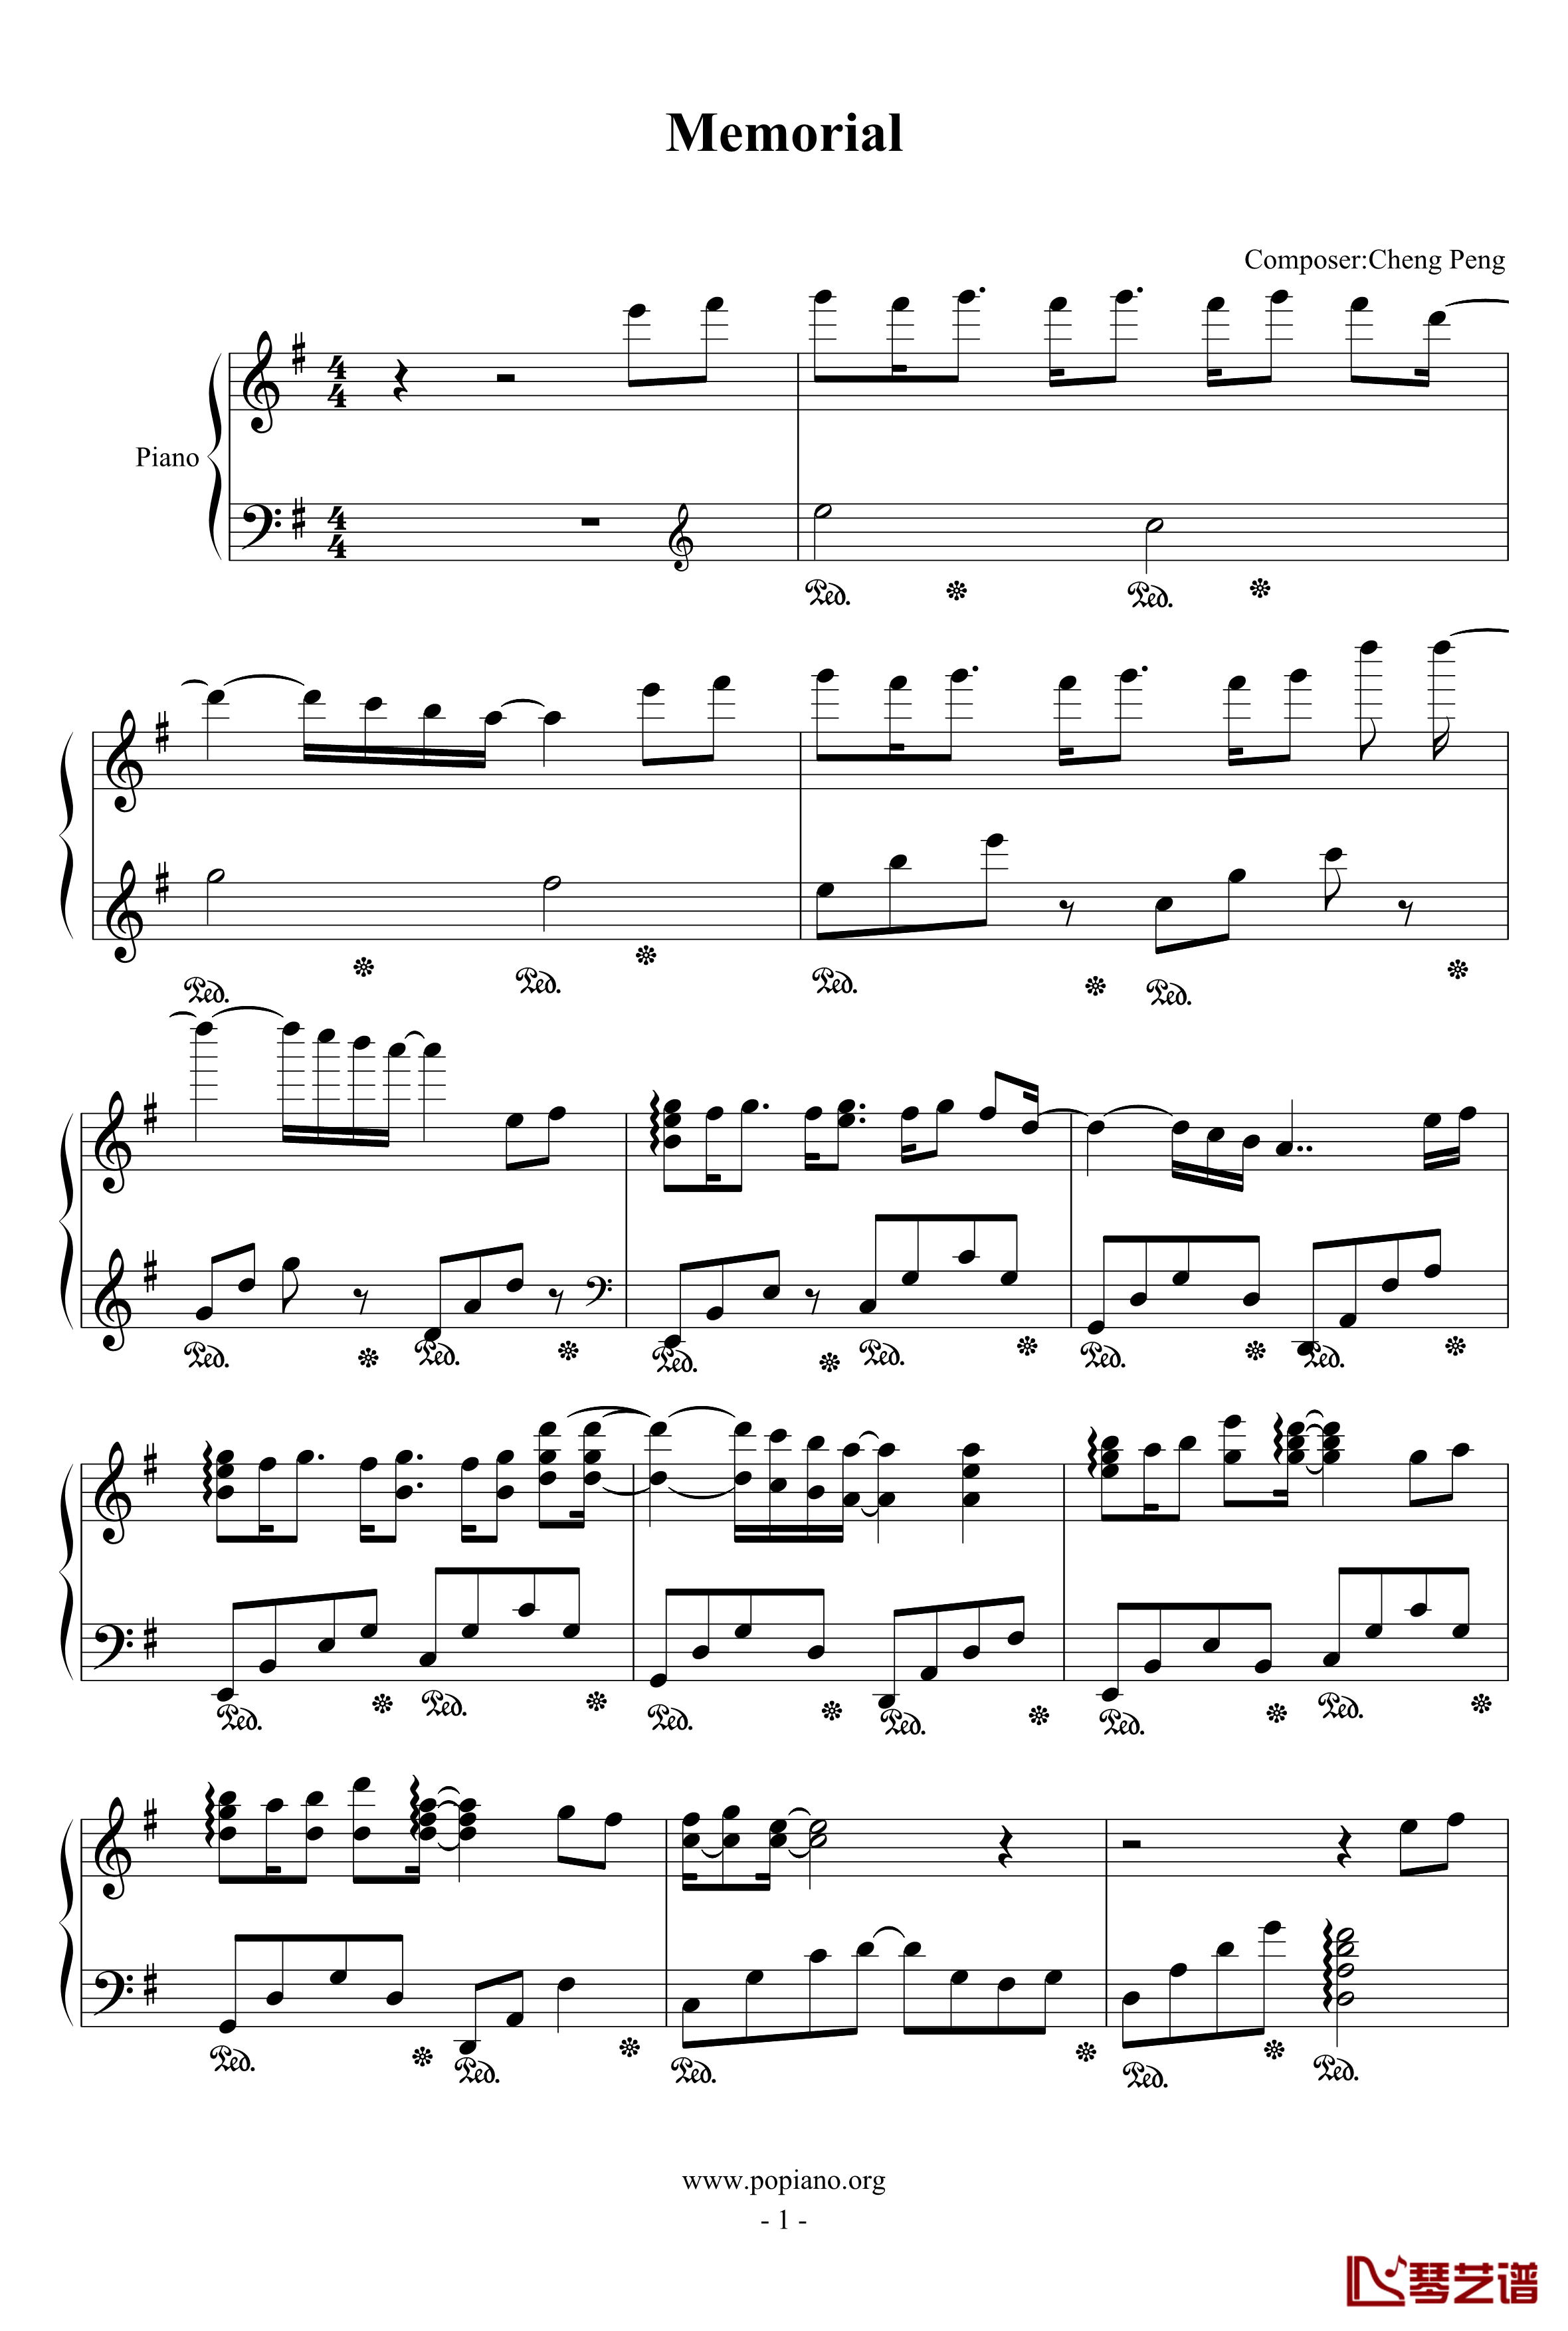 Memorial钢琴谱-chengpeng19901